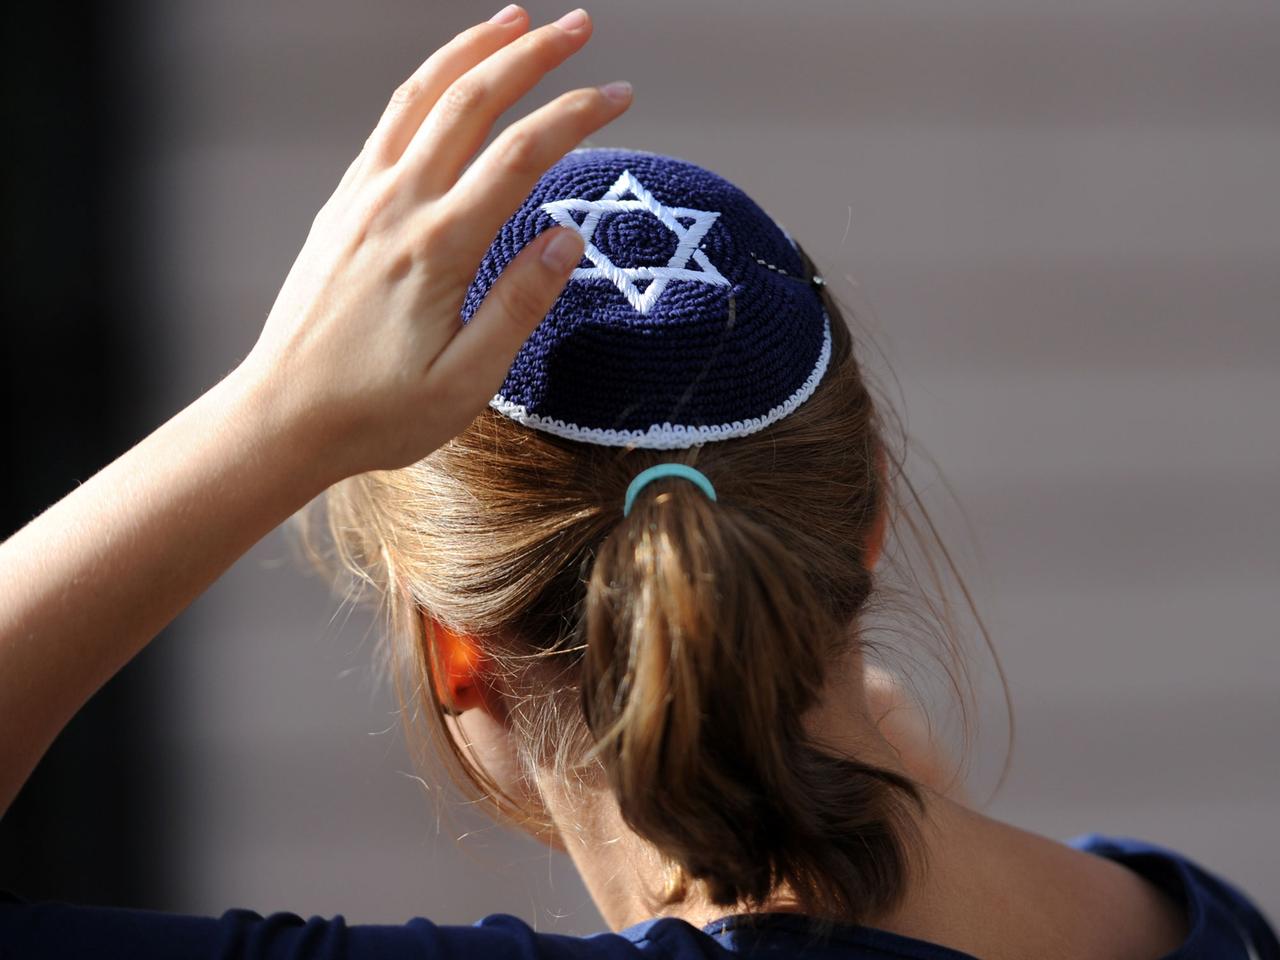 Eine junge Frau mit Kippa nimmt am Samstag (15.09.2012) in Berlin an einer Demonstration teil. Der Kippa-Spaziergang, zu dem im Internet aufgerufen worden war, sollte ein Zeichen gegen Antisemitismus setzen und fand auch anlässlich des bevorstehenden jüdischen Festes Rosch ha-Schana (jüdischer Neujahrstag) statt.